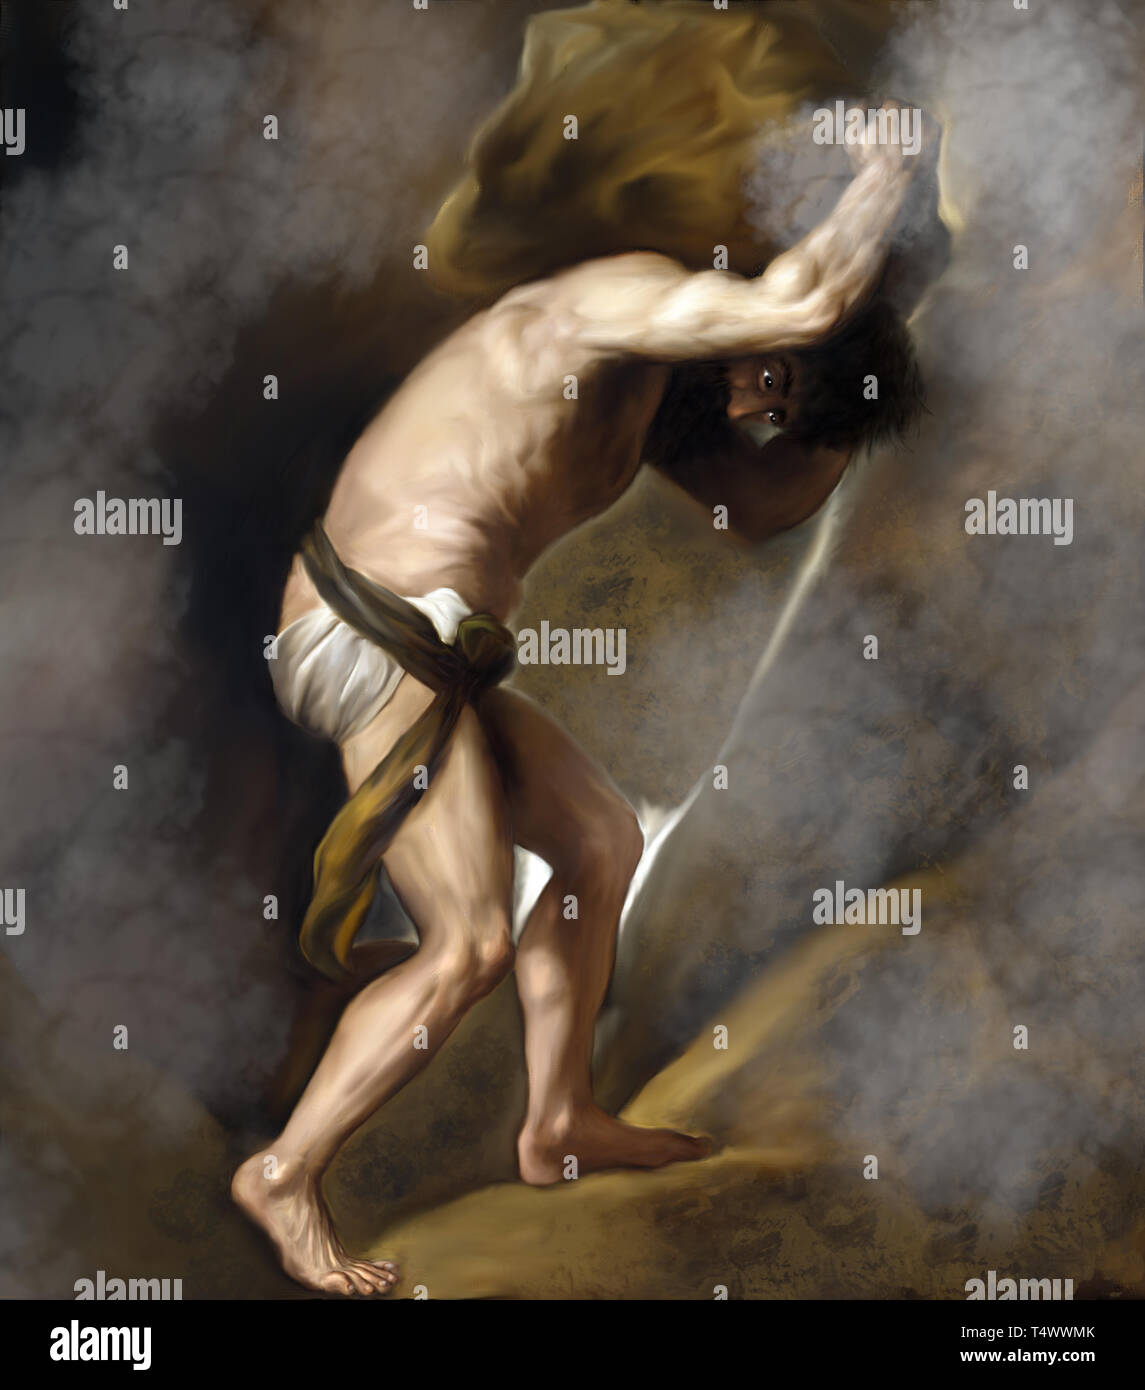 Sisifo di Tiziano. La versione moderna della pittura classica: Sisifo di Tiziano. Egli è considerato nella mitologia greca come il fondatore di Corinto. Foto Stock